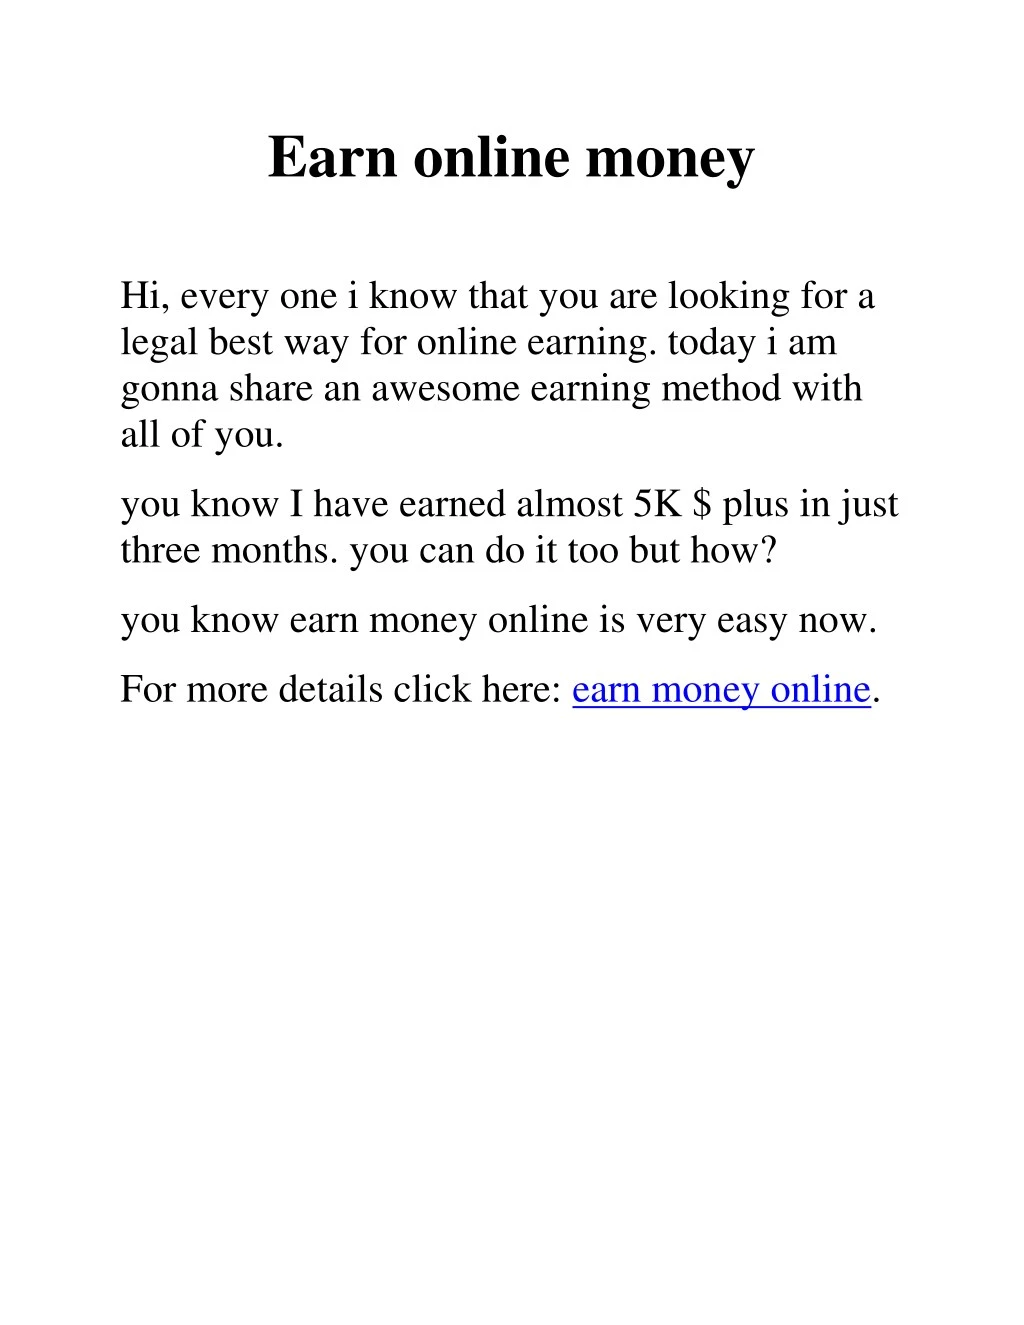 earn online money n.